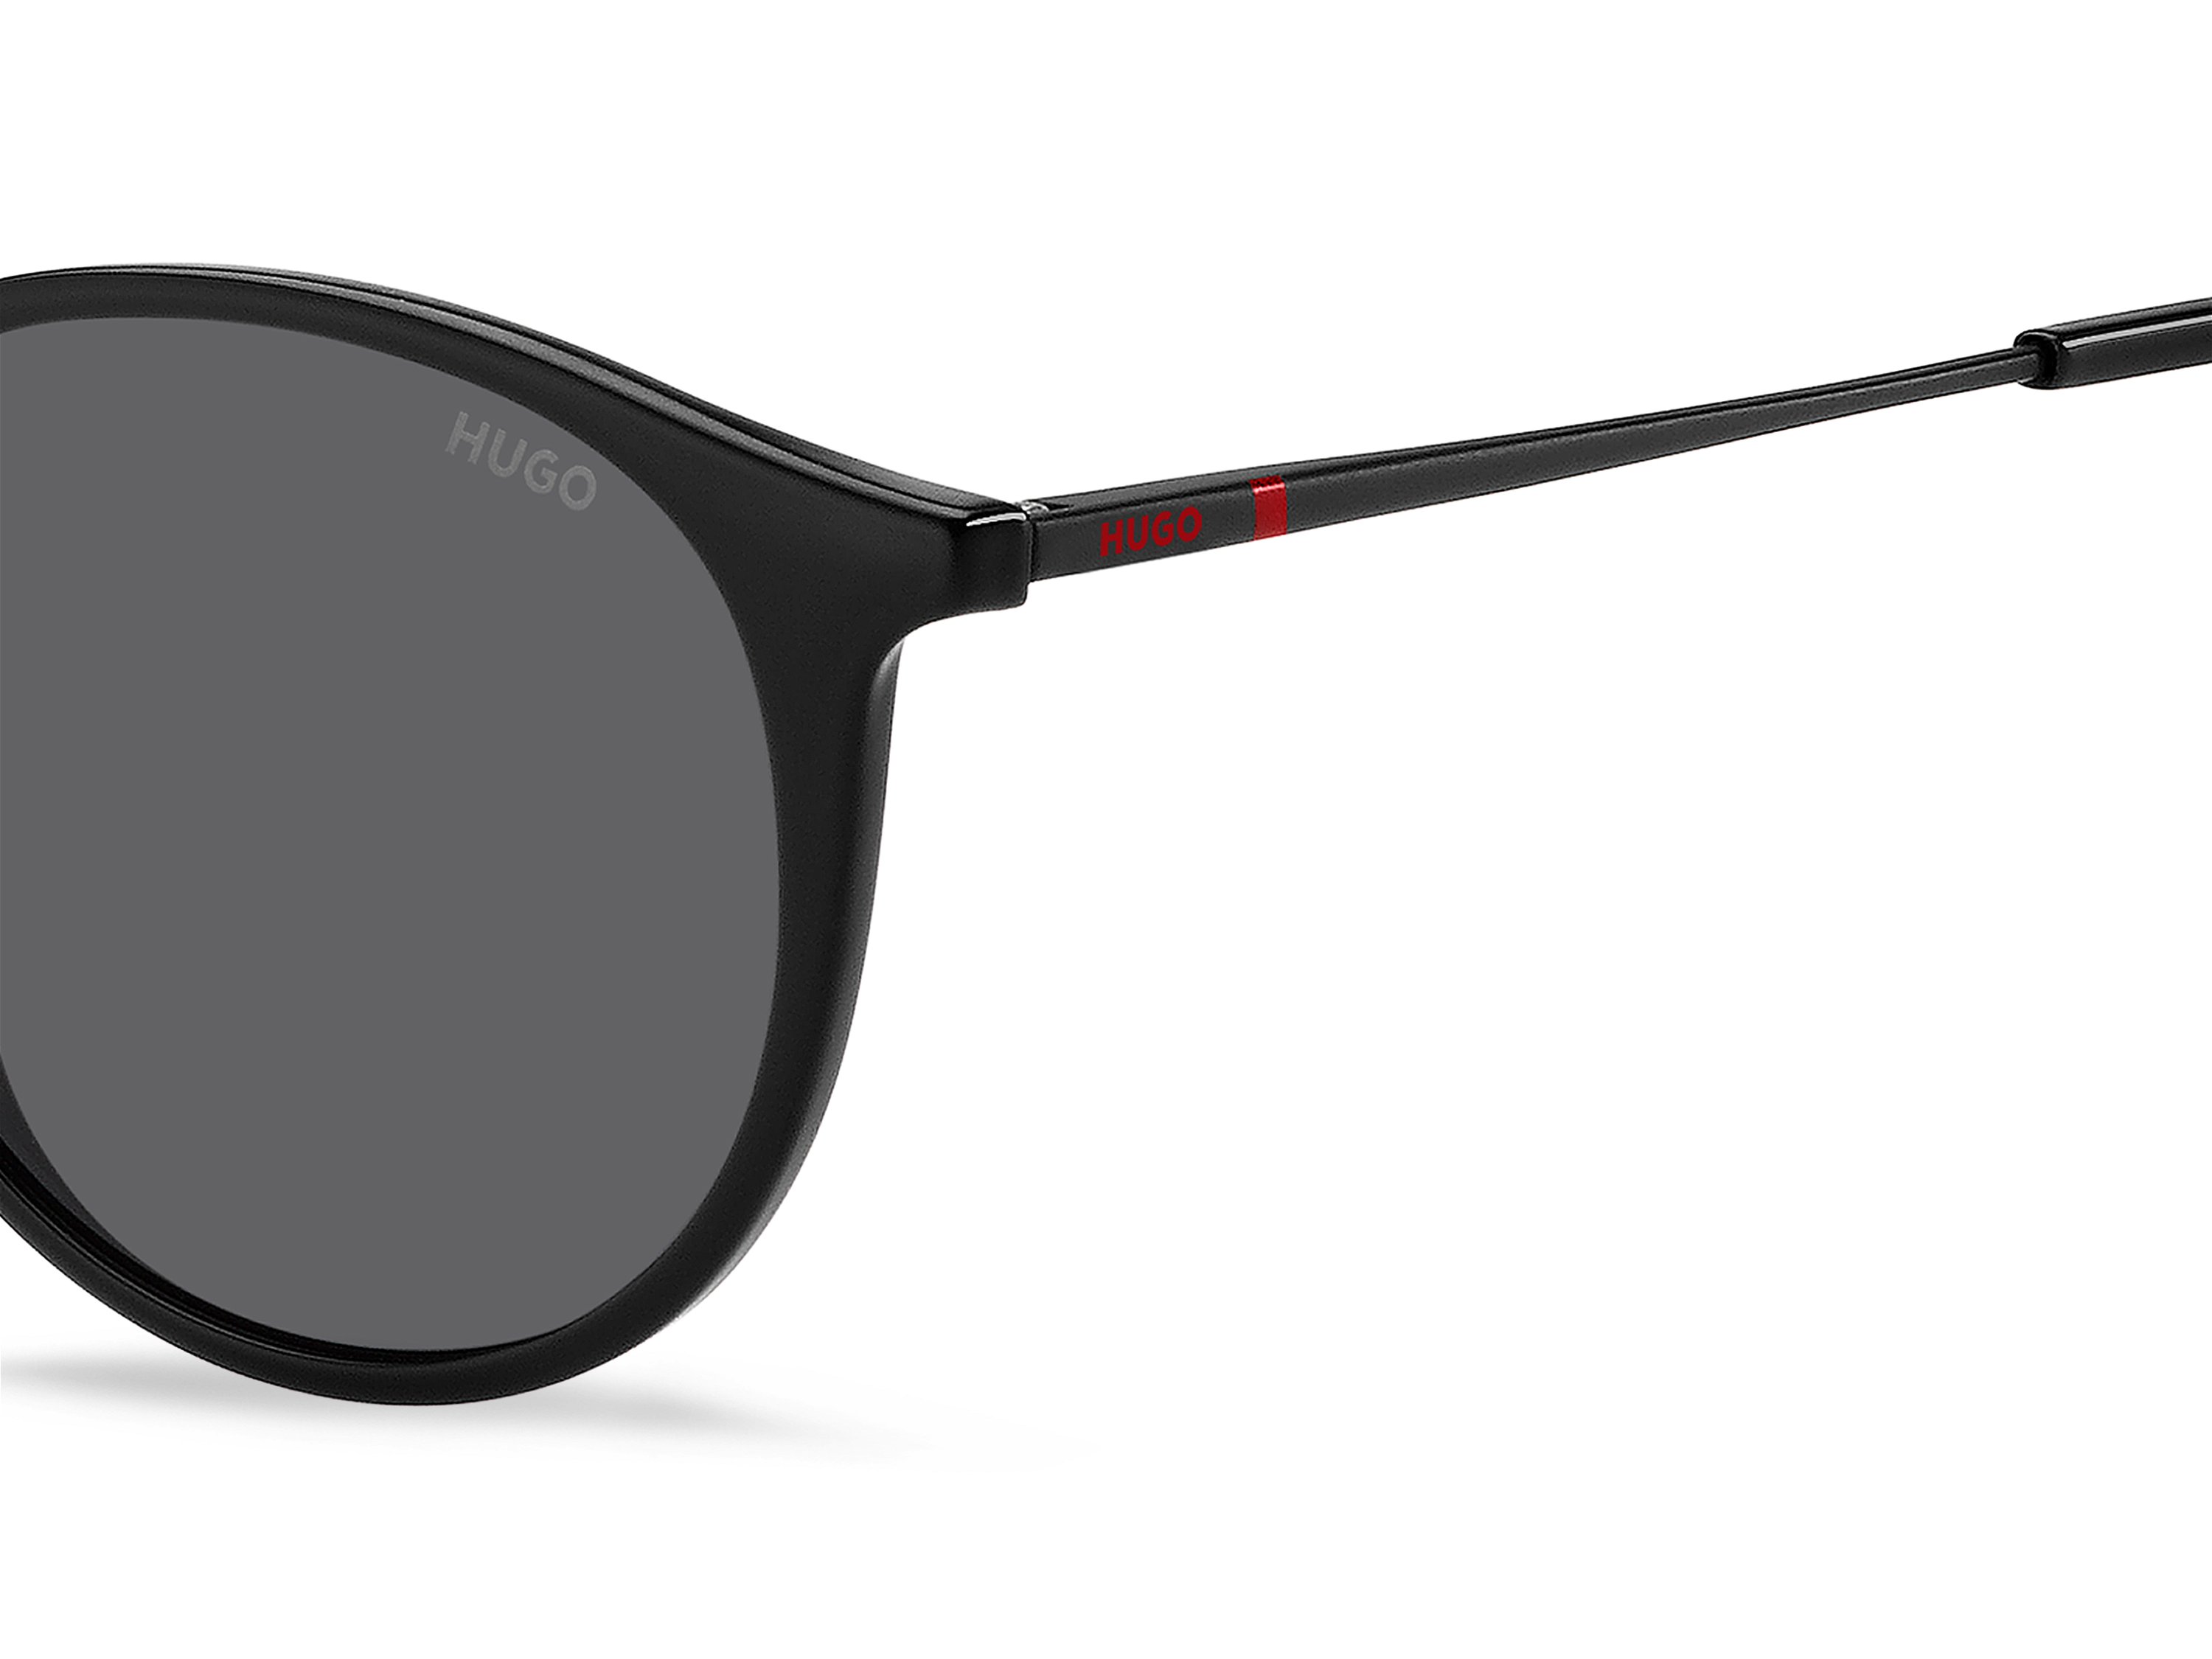 Das Bild zeigt die Sonnenbrille HG1286/S OIT von der Marke Hugo in schwarz/rot.